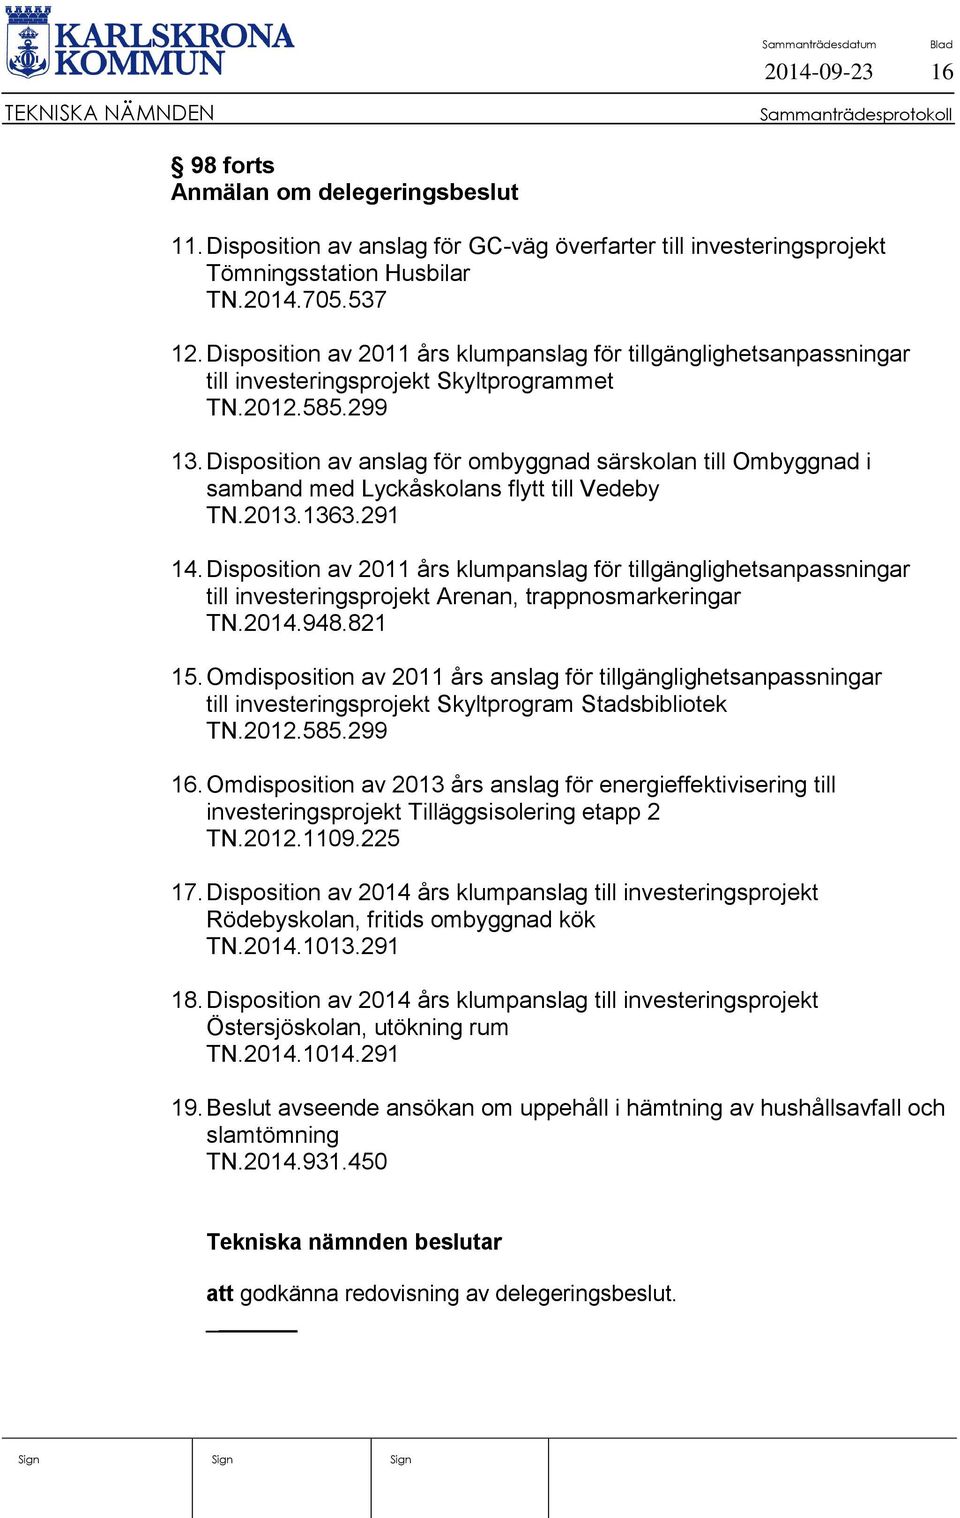 Disposition av anslag för ombyggnad särskolan till Ombyggnad i samband med Lyckåskolans flytt till Vedeby TN.2013.1363.291 14.